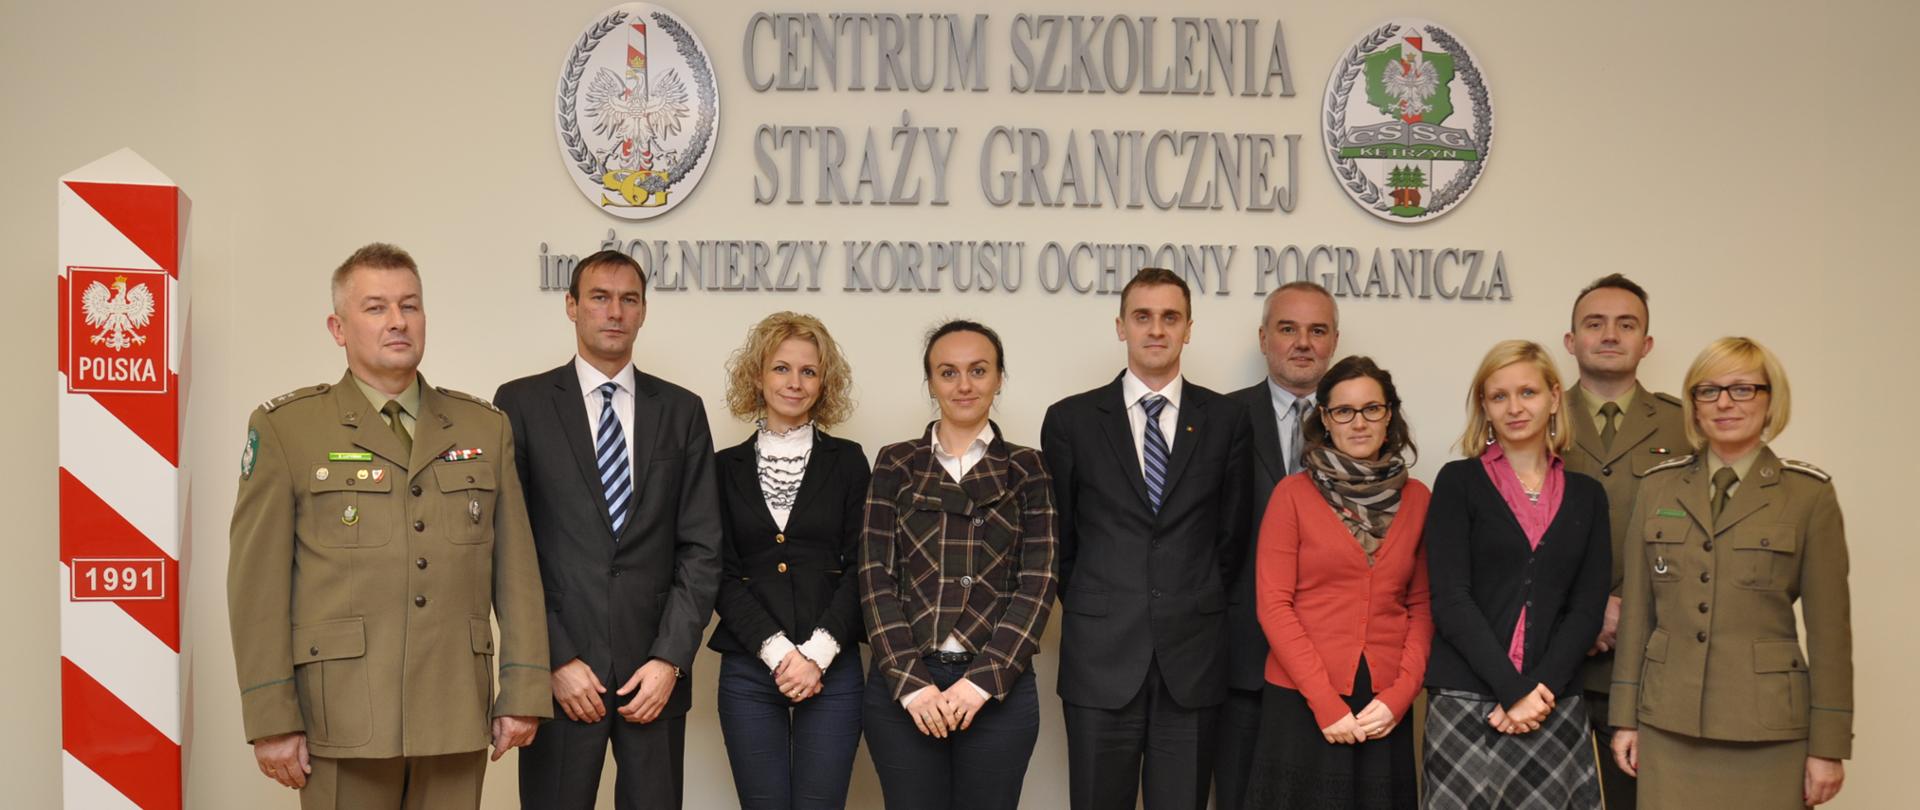 Wizyta przedstawicieli Ministerstwa Spraw Wewnętrznych Rumunii
